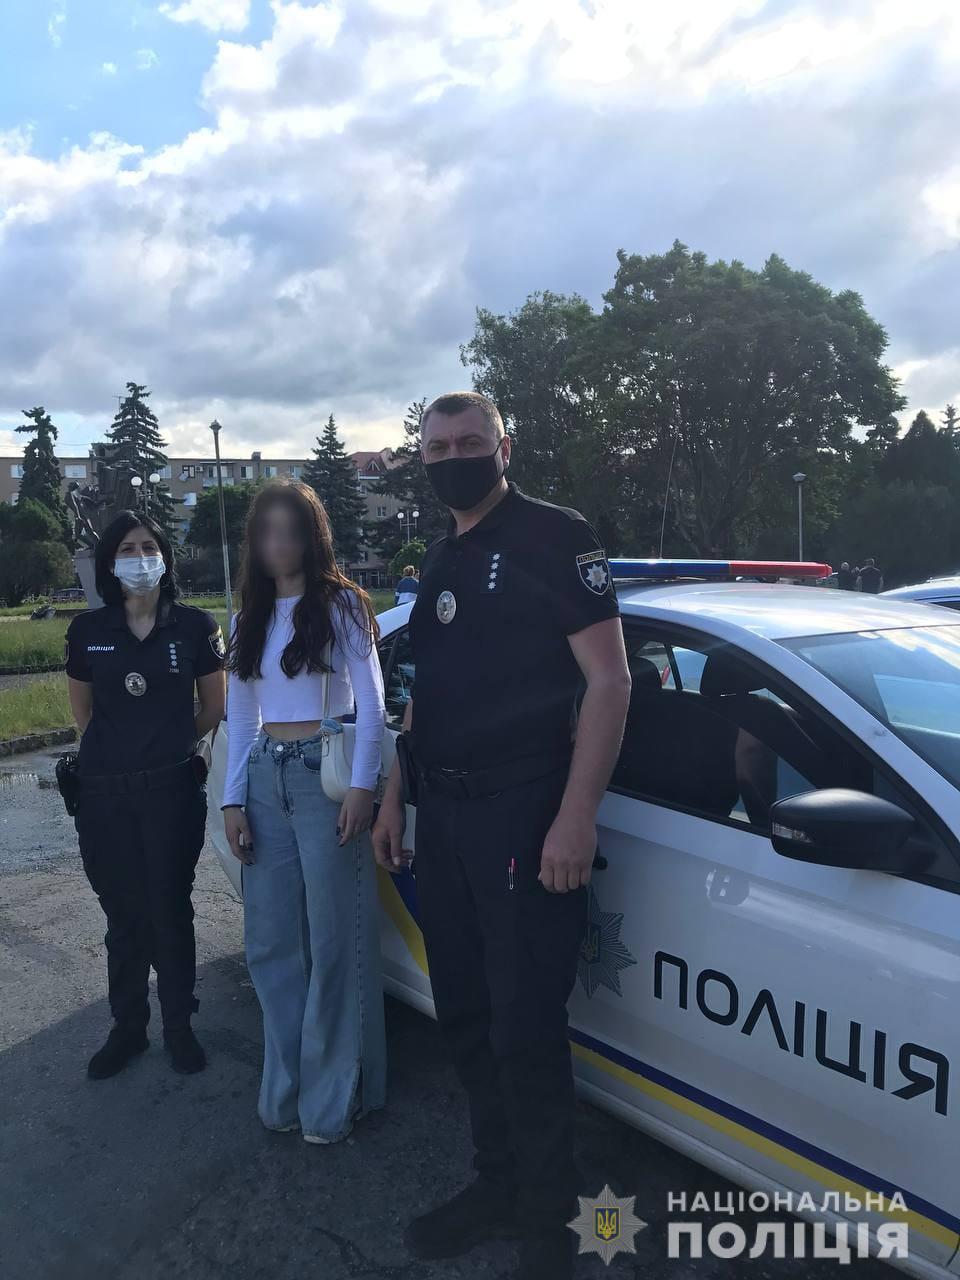 Ужгород обратился в полицию с заявлением об исчезновении дочери. Мужчина рассказал, что 14-летняя девочка уехала в отпуск с одноклассниками в село Оноковка и до вечера домой не возвращалась. 